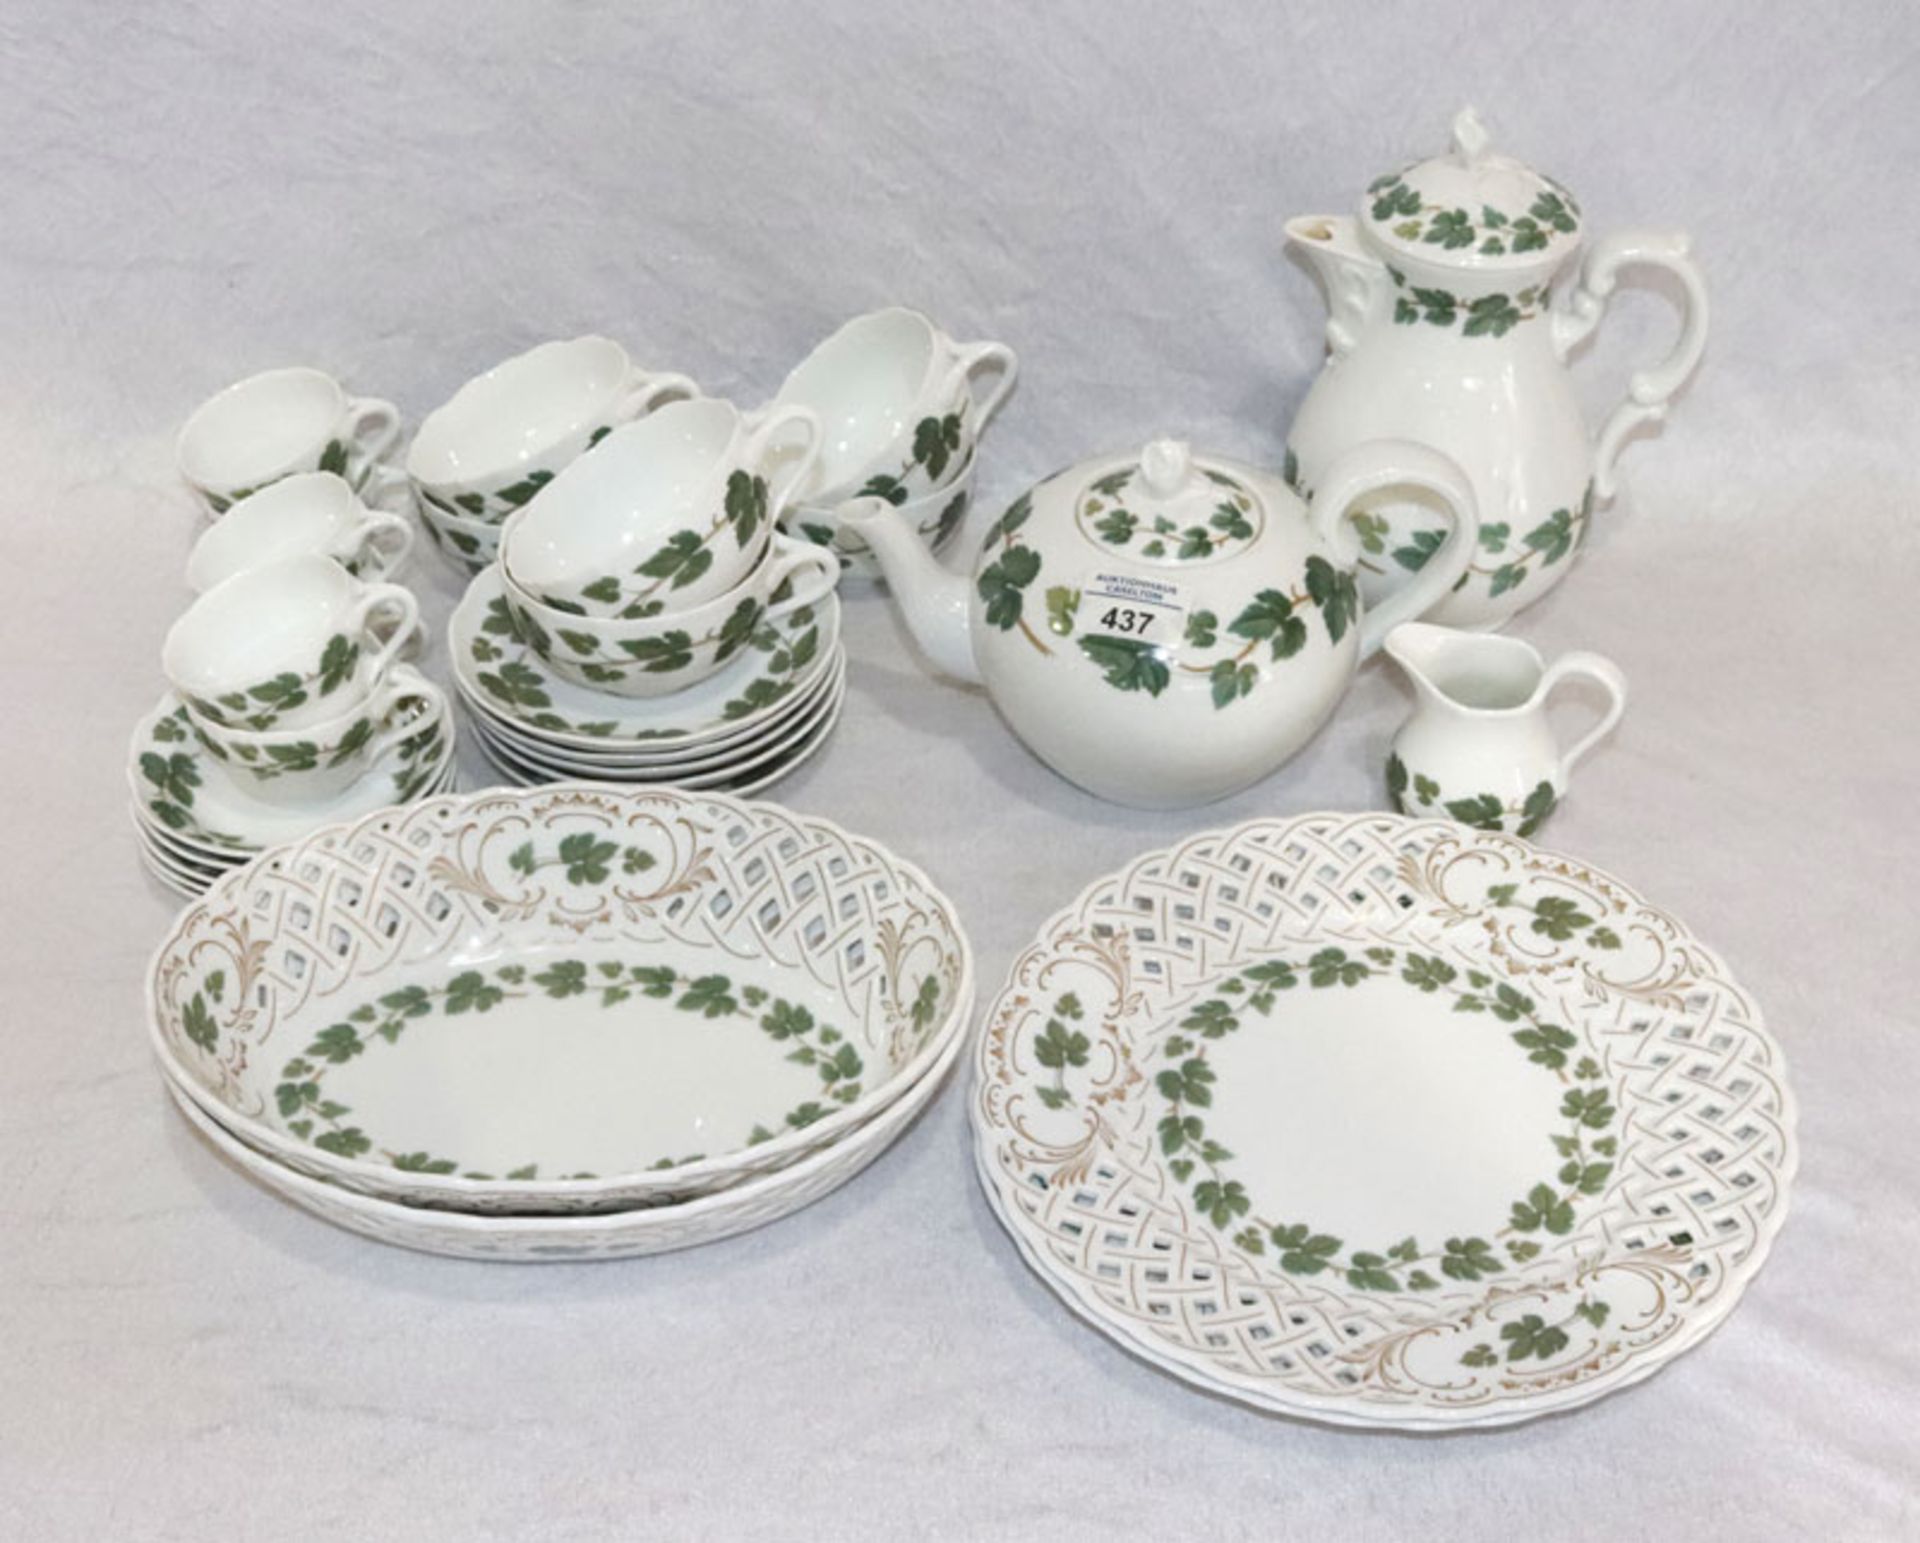 Hutschenreuther Tee- und Mokka-Serviceteile, Maria Theresia mit Weinlaubdekor, Teekanne, 6 Tee-